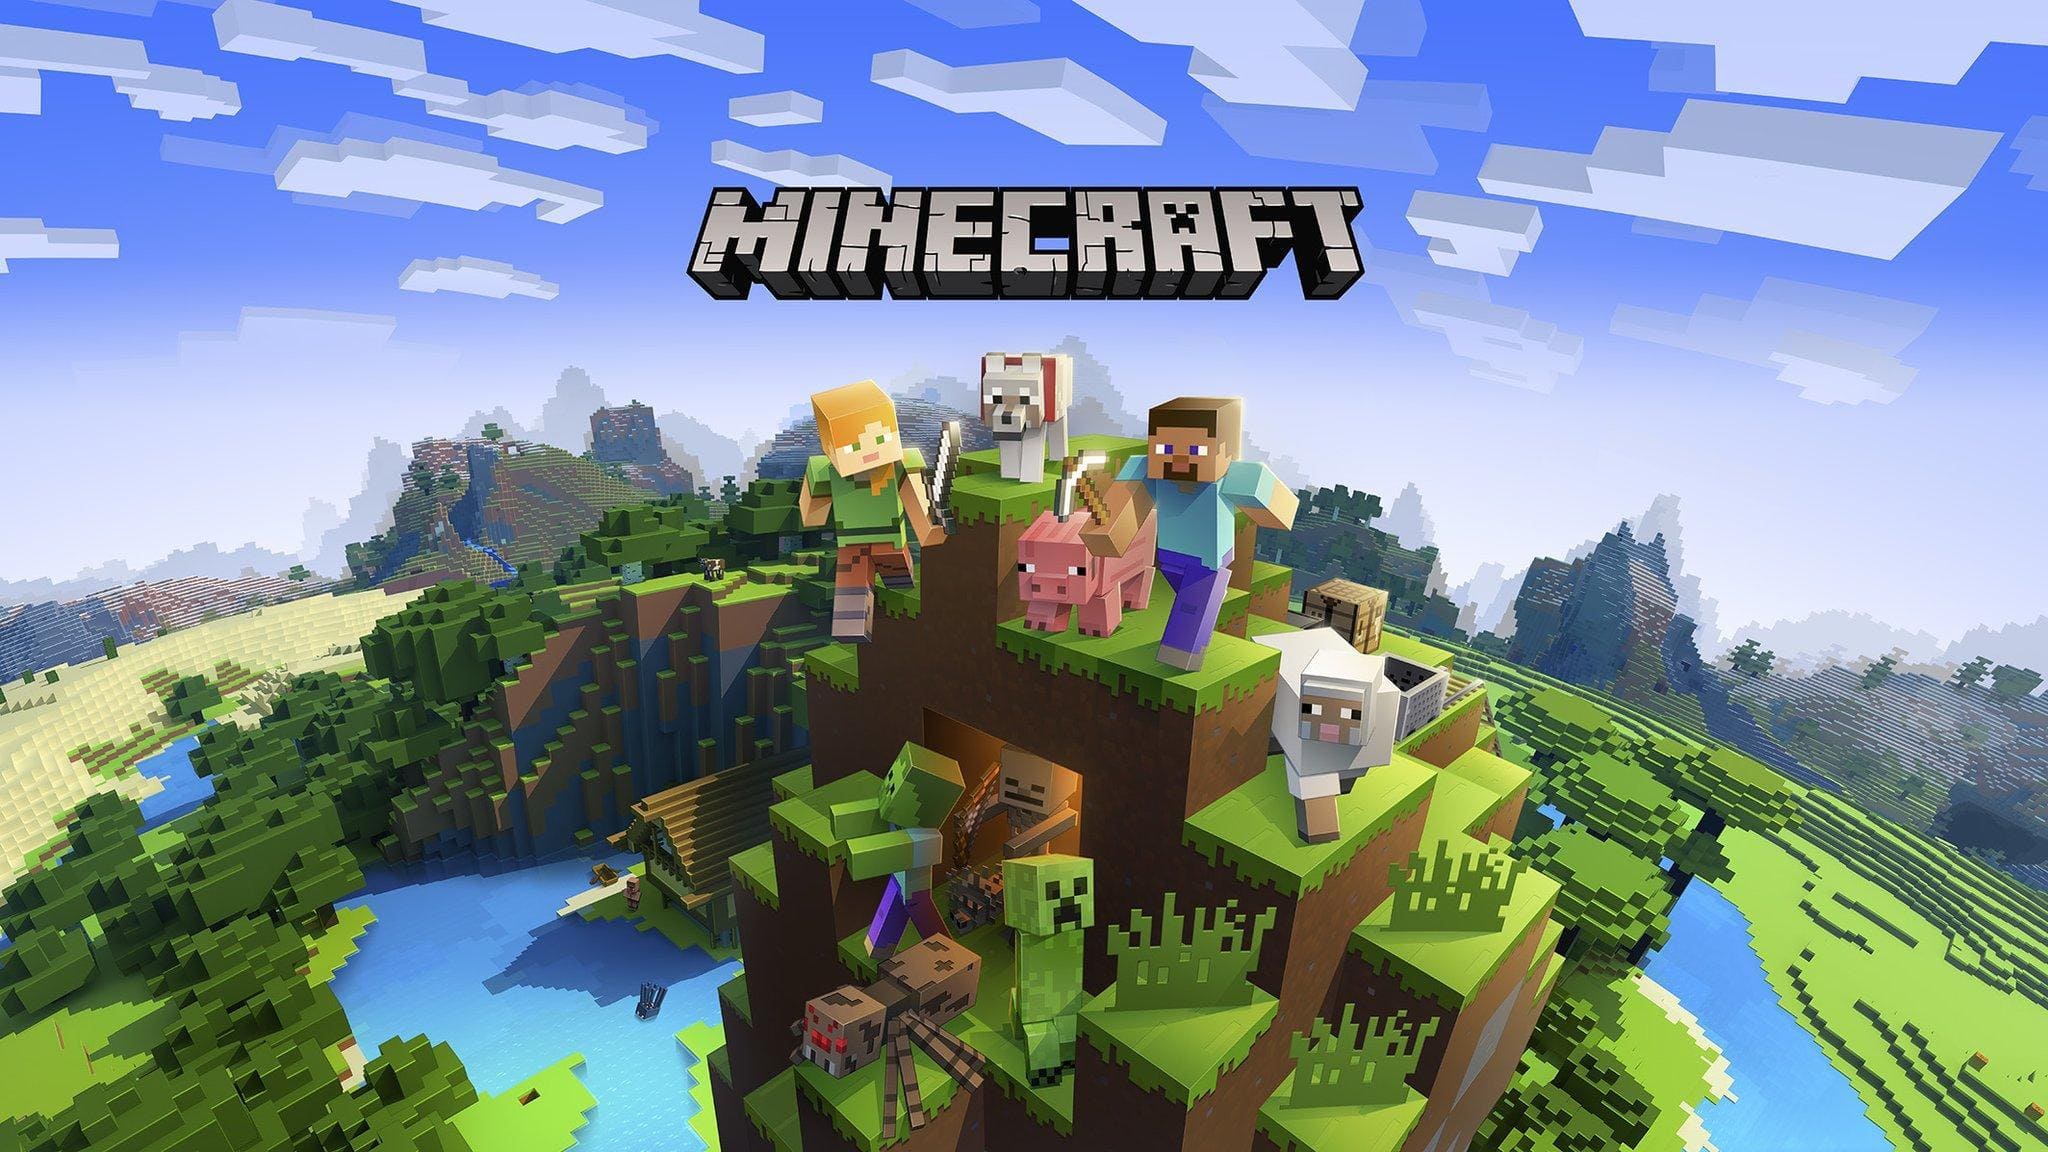 Bộ sưu tập hình nền Minecraft đẹp nhất dành cho các fan của game này. Với hình ảnh độ phân giải cao, sống động cùng màu sắc tươi sáng, chắc chắn sẽ làm bạn hài lòng và không thể bỏ qua. Hãy trang trí màn hình điện thoại hay máy tính của mình với những hình nền Minecraft đẹp nhất này nhé.